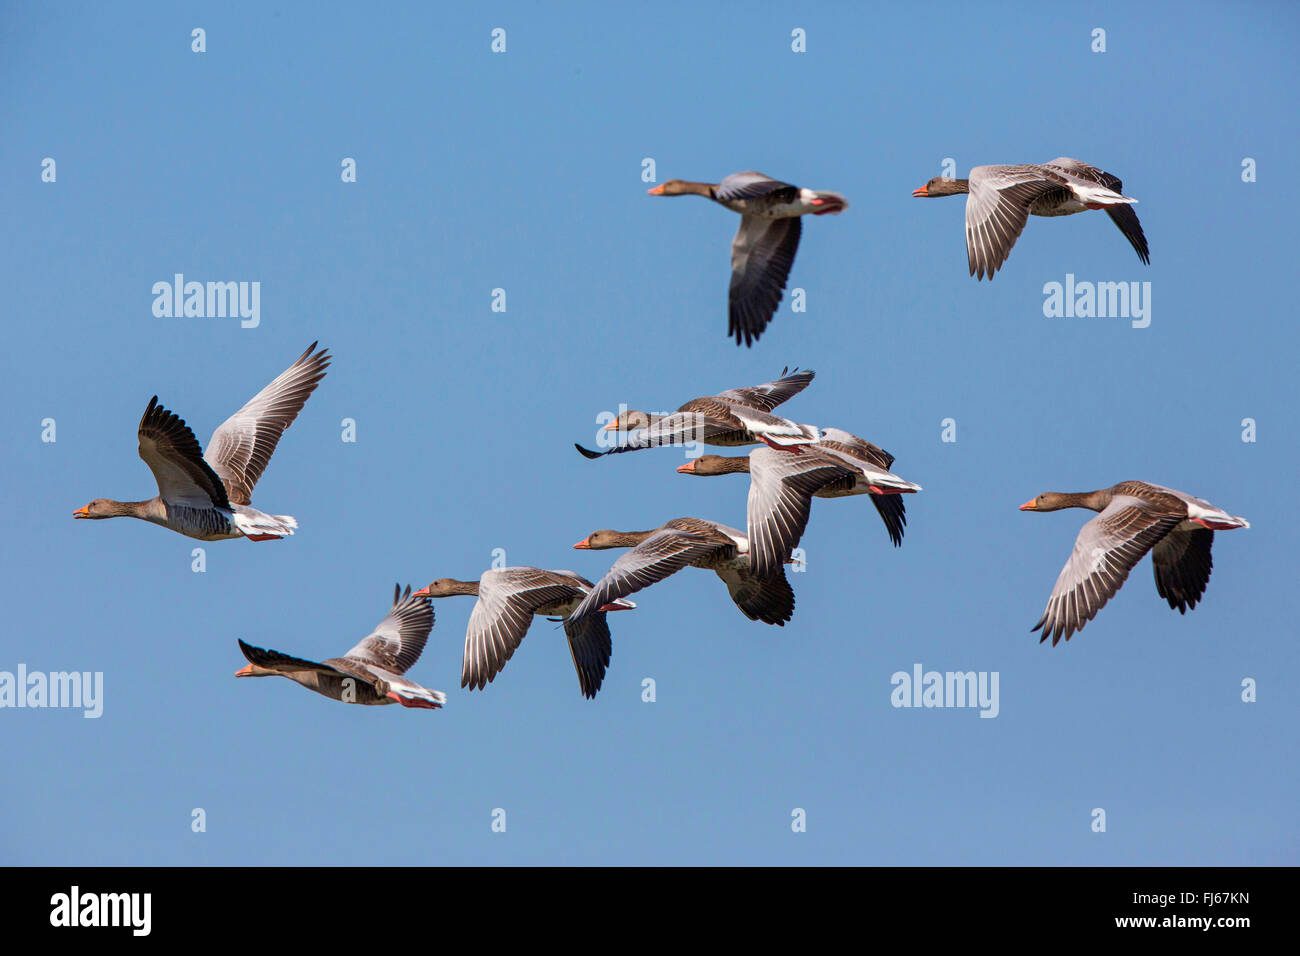 greylag goose (Anser anser), flying flock, Germany, Bavaria Stock Photo